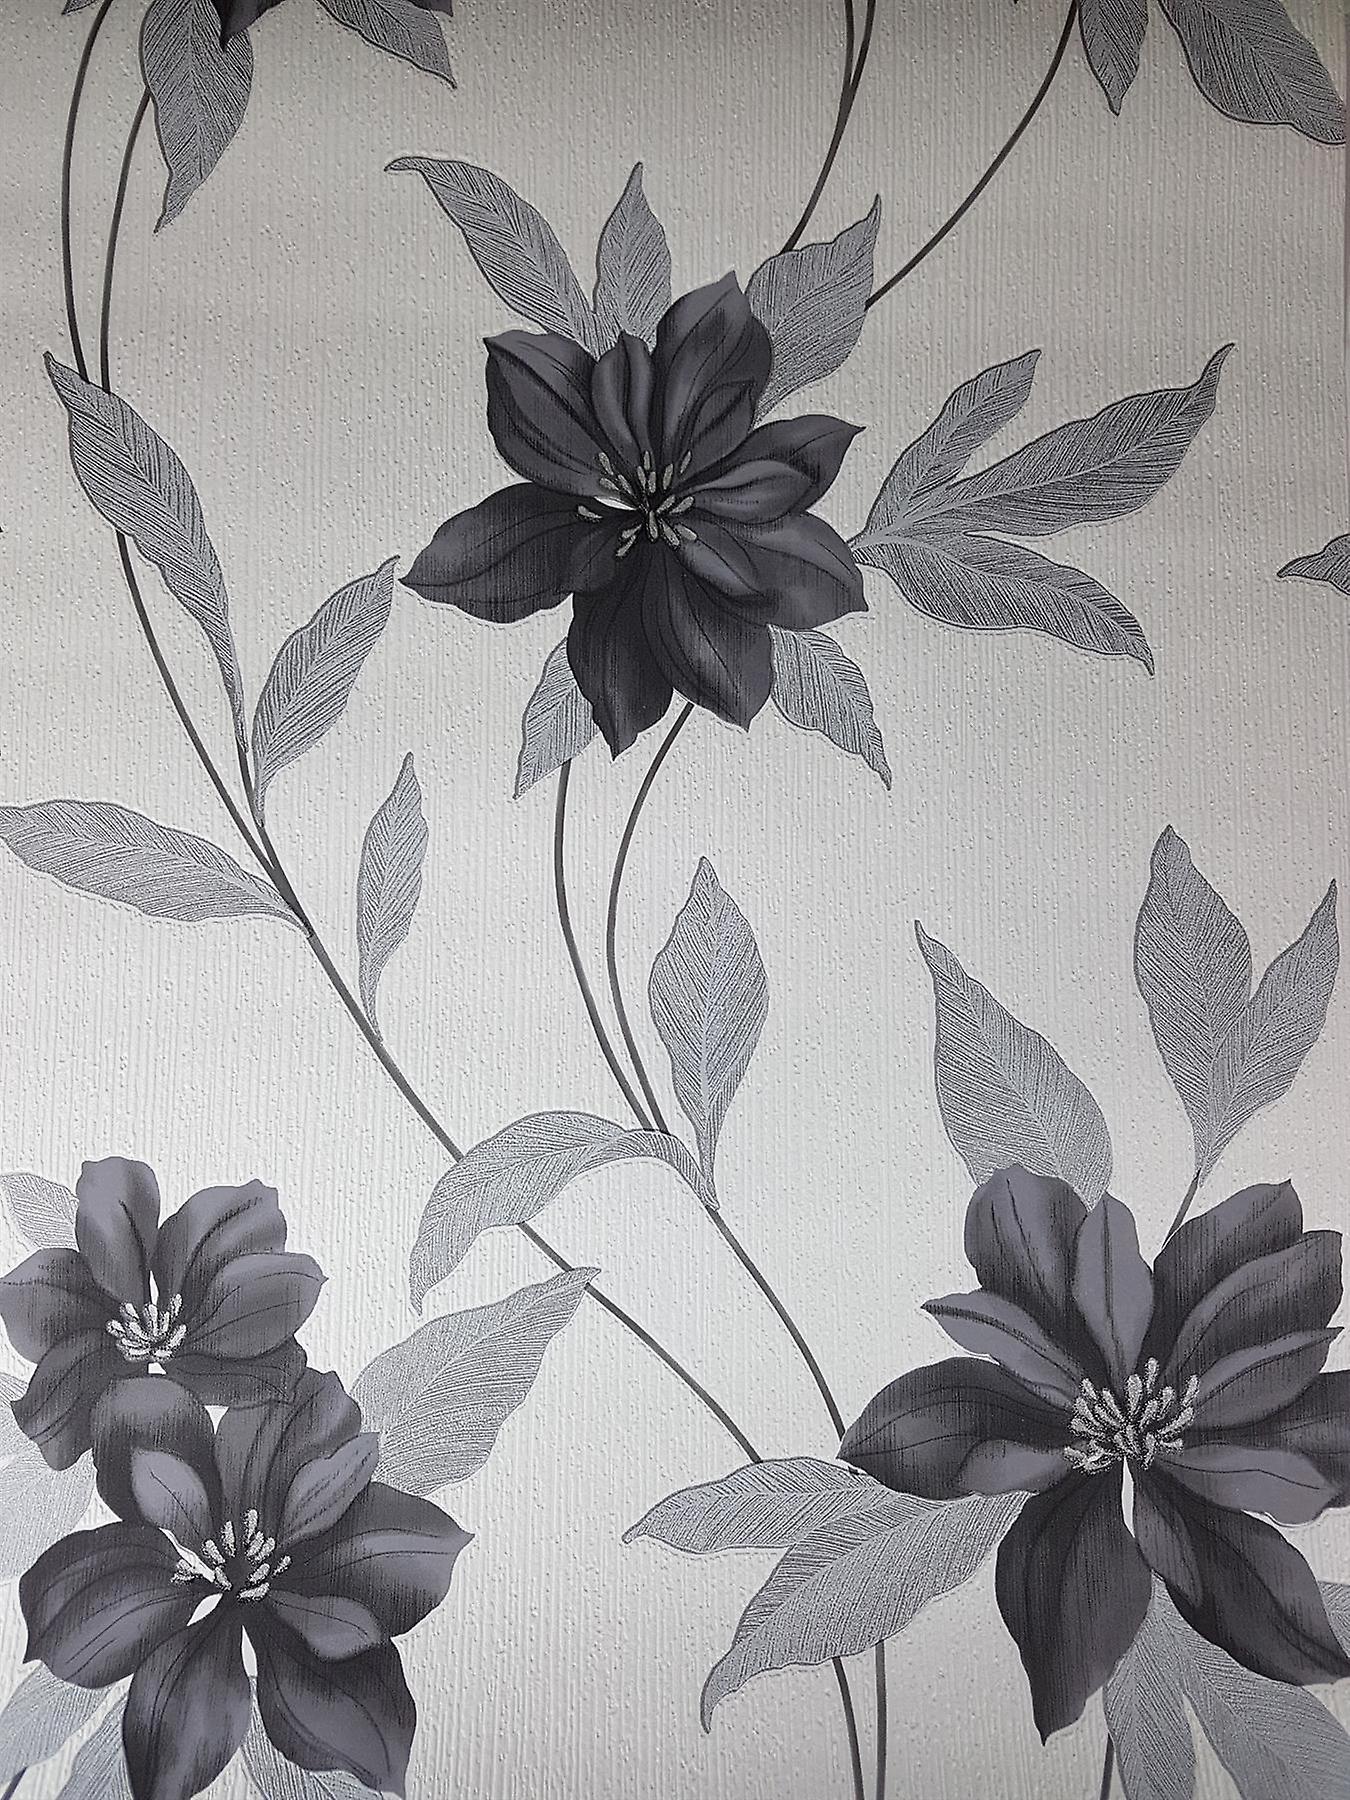 Spring Black Flower Glitter Wallpaper Floral Black White Grey Floral Wallpaper & Background Download